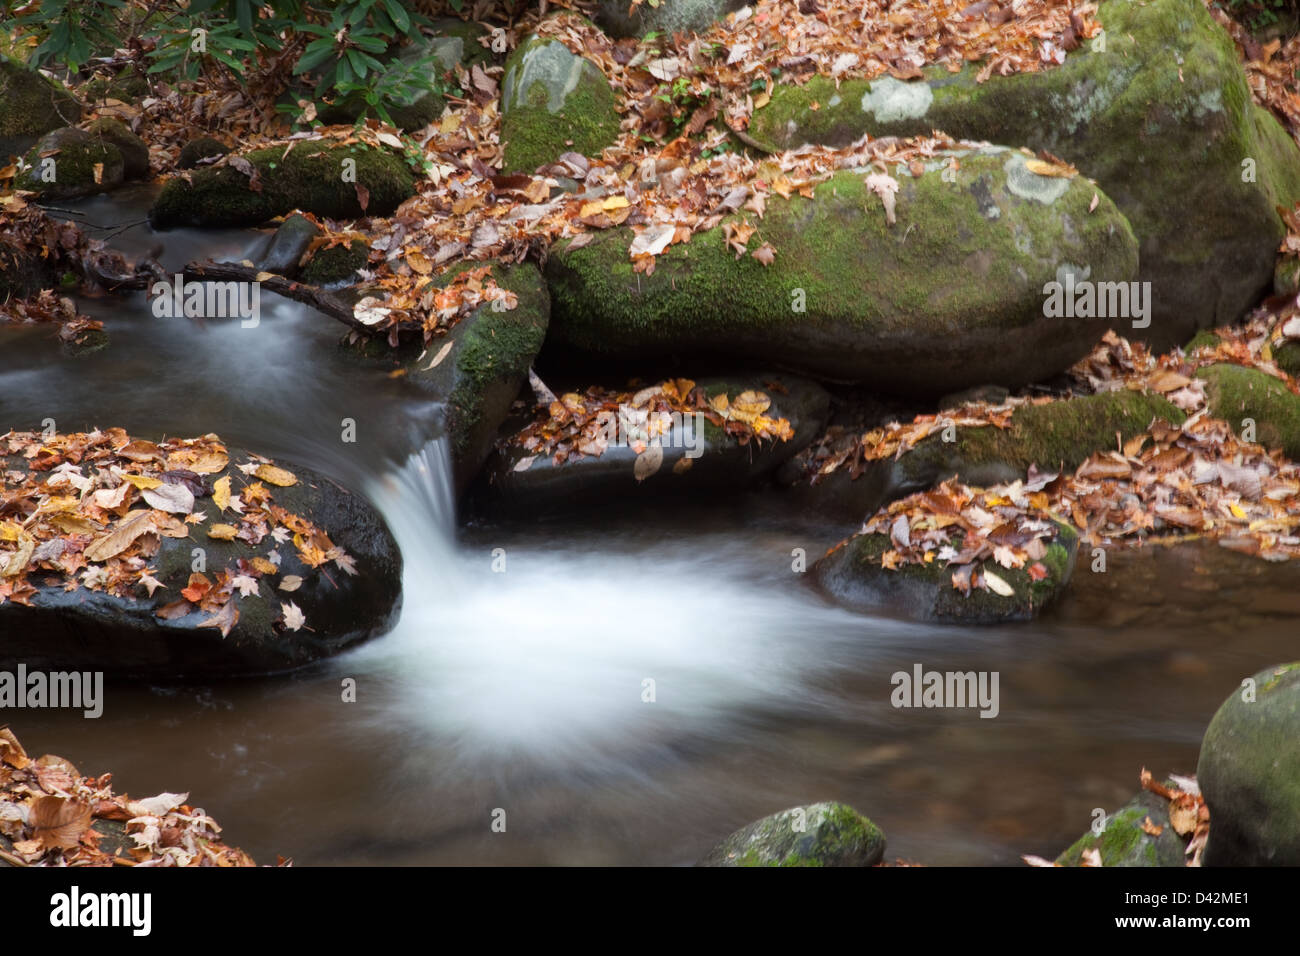 Arroyo de Montaña por rocas cubiertas de musgo en cascada con una caída de la hoja que cubre de las piedras, un turista apacible deleite Foto de stock